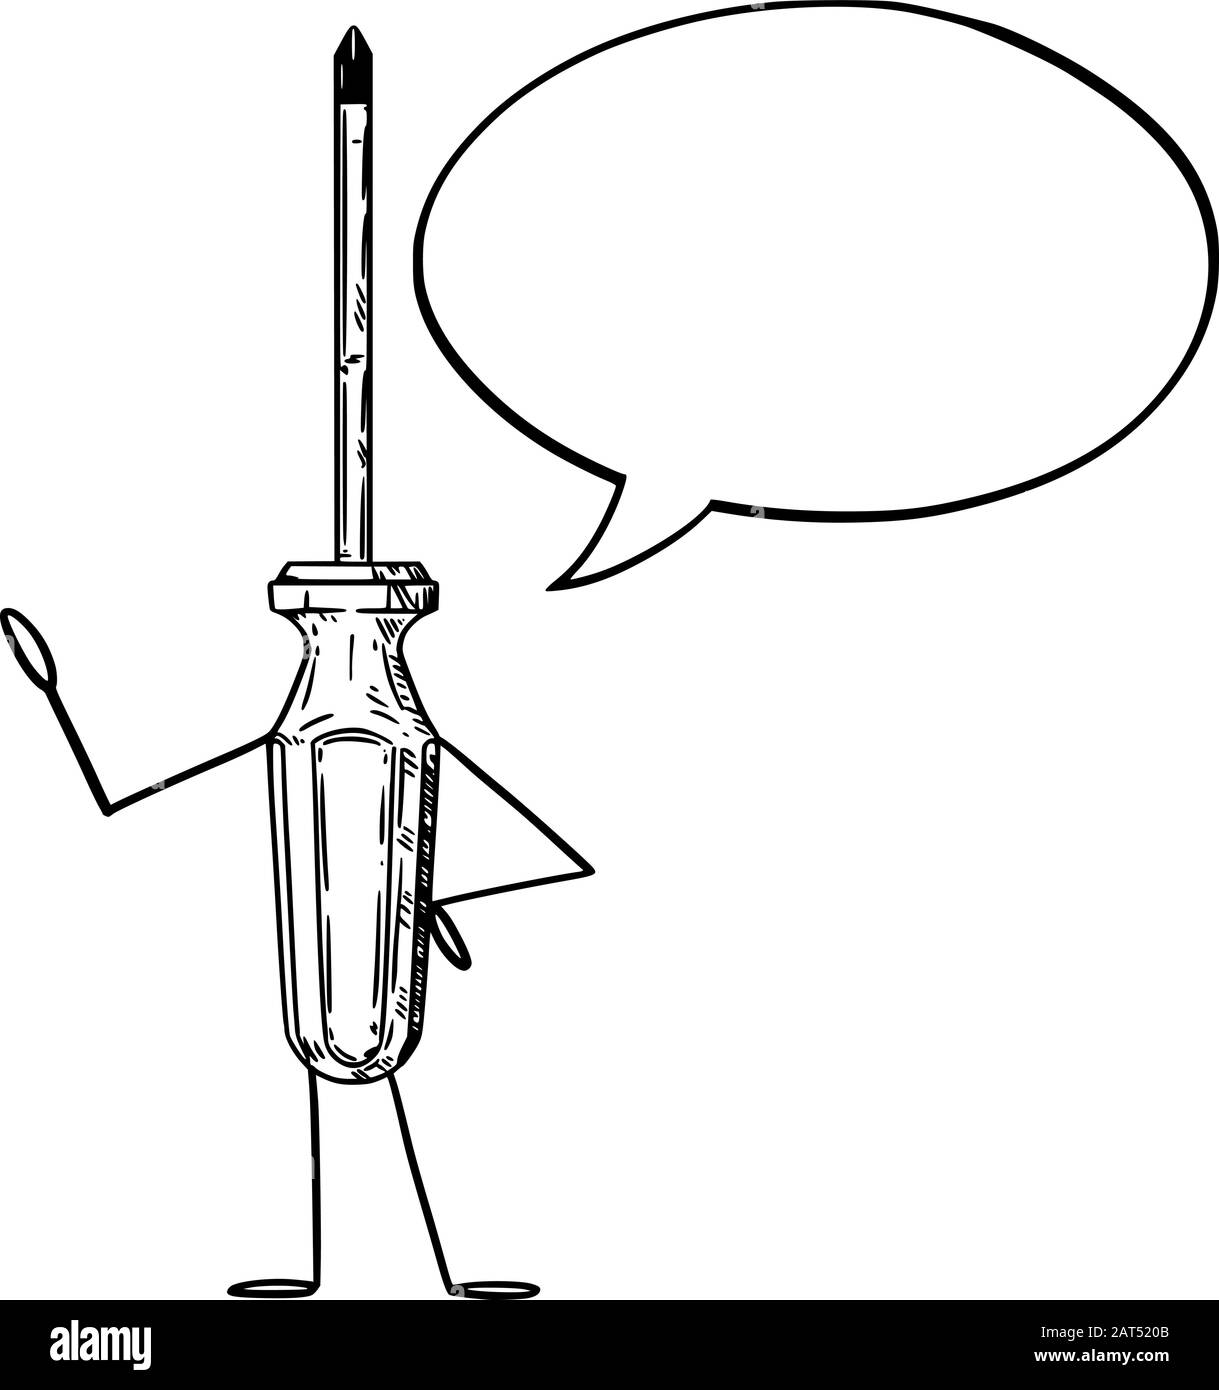 Illustrazione vettoriale del carattere del cacciavite del cartone animato con la bolla del parlato. Artigianato o pubblicità di attrezzo o disegno di vendita. Illustrazione Vettoriale